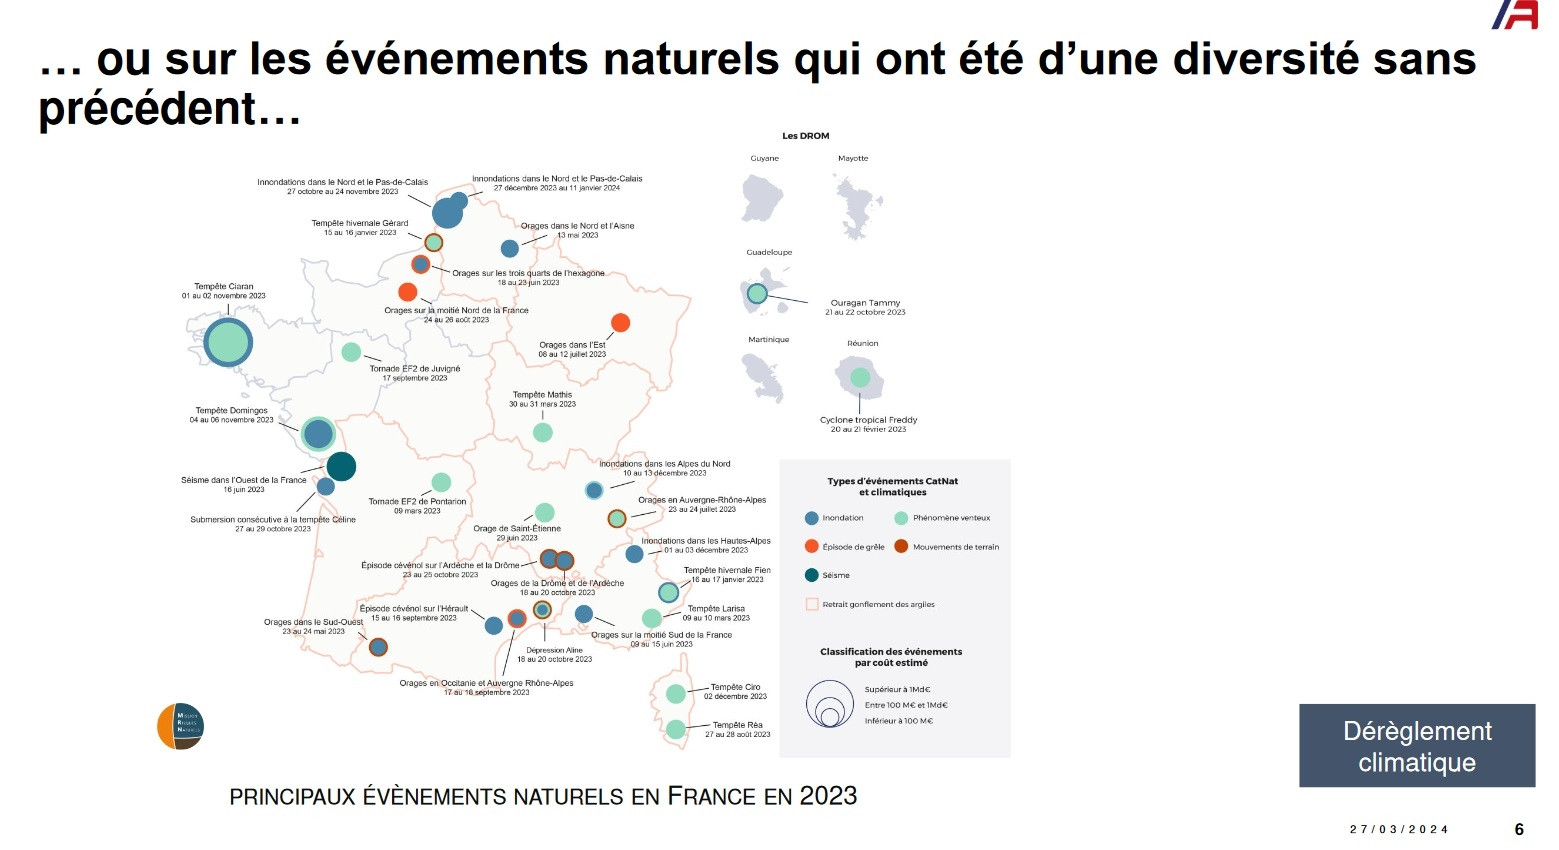 France Assureurs evenements naturels 2023